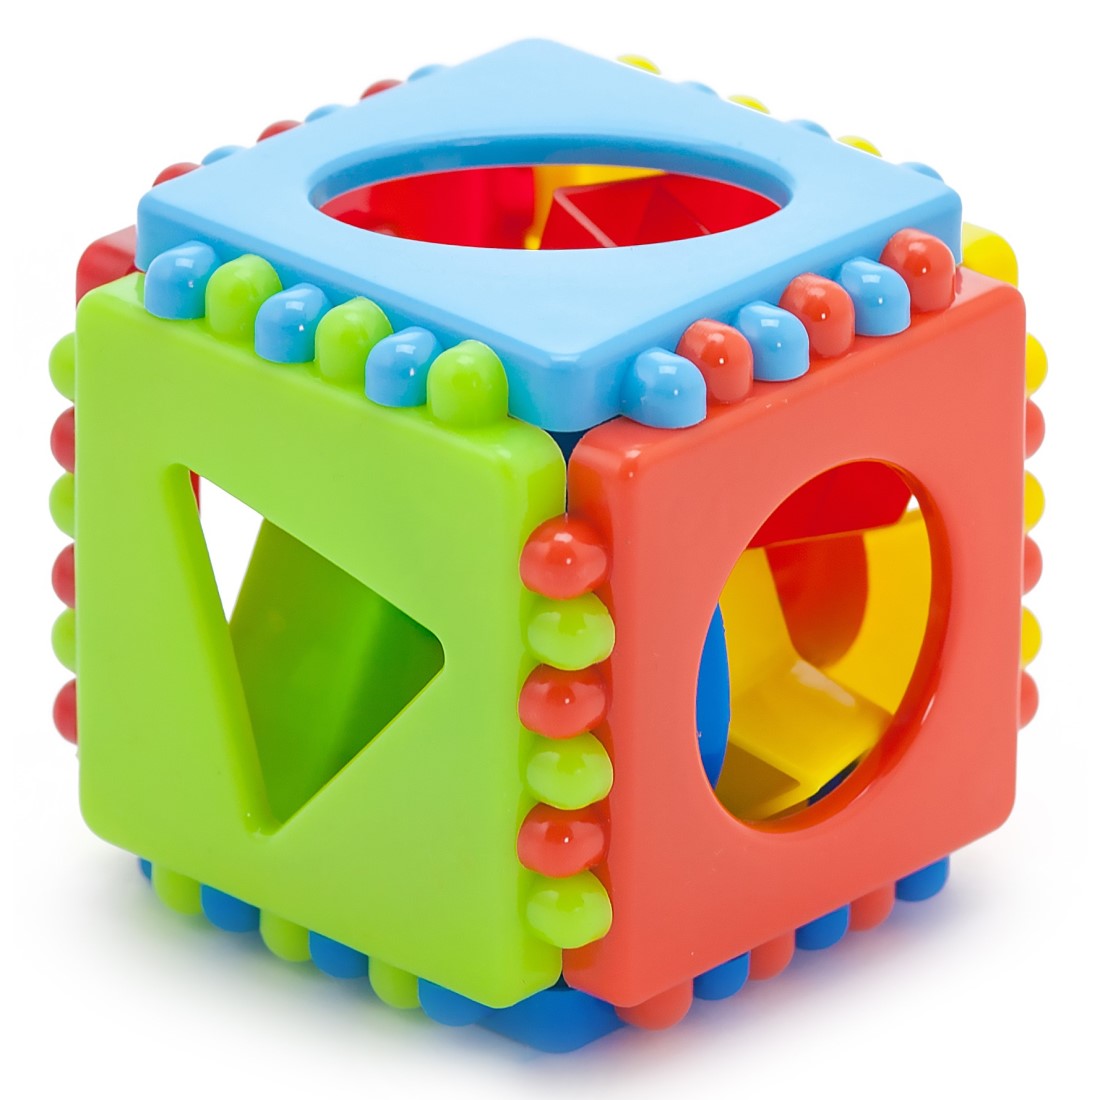 Развивающие игрушки БИПЛАНТ для малышей конструктор Кноп-Кнопыч 46 деталей + Сортер кубик малый + Команда КВА - фото 8